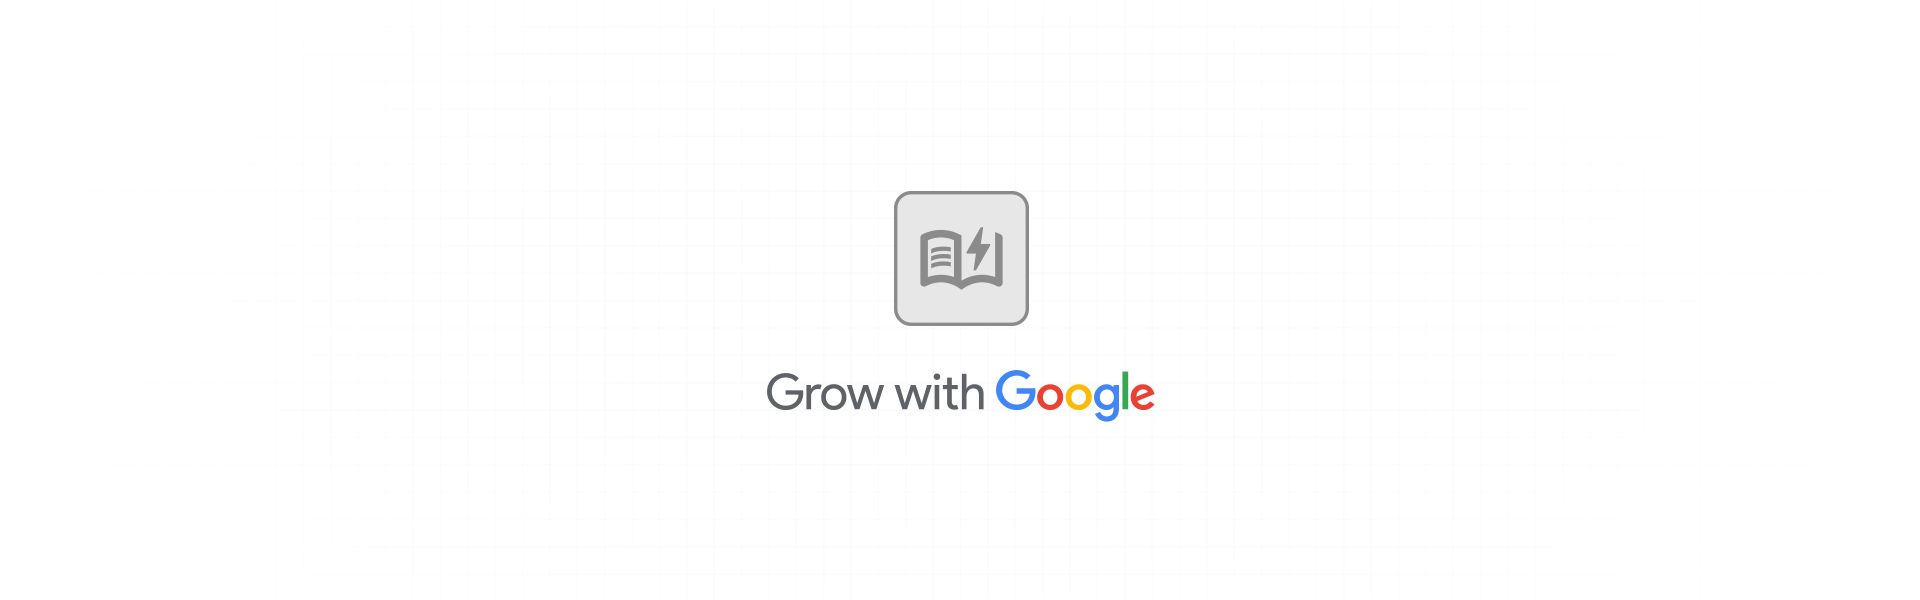 Google UX Design